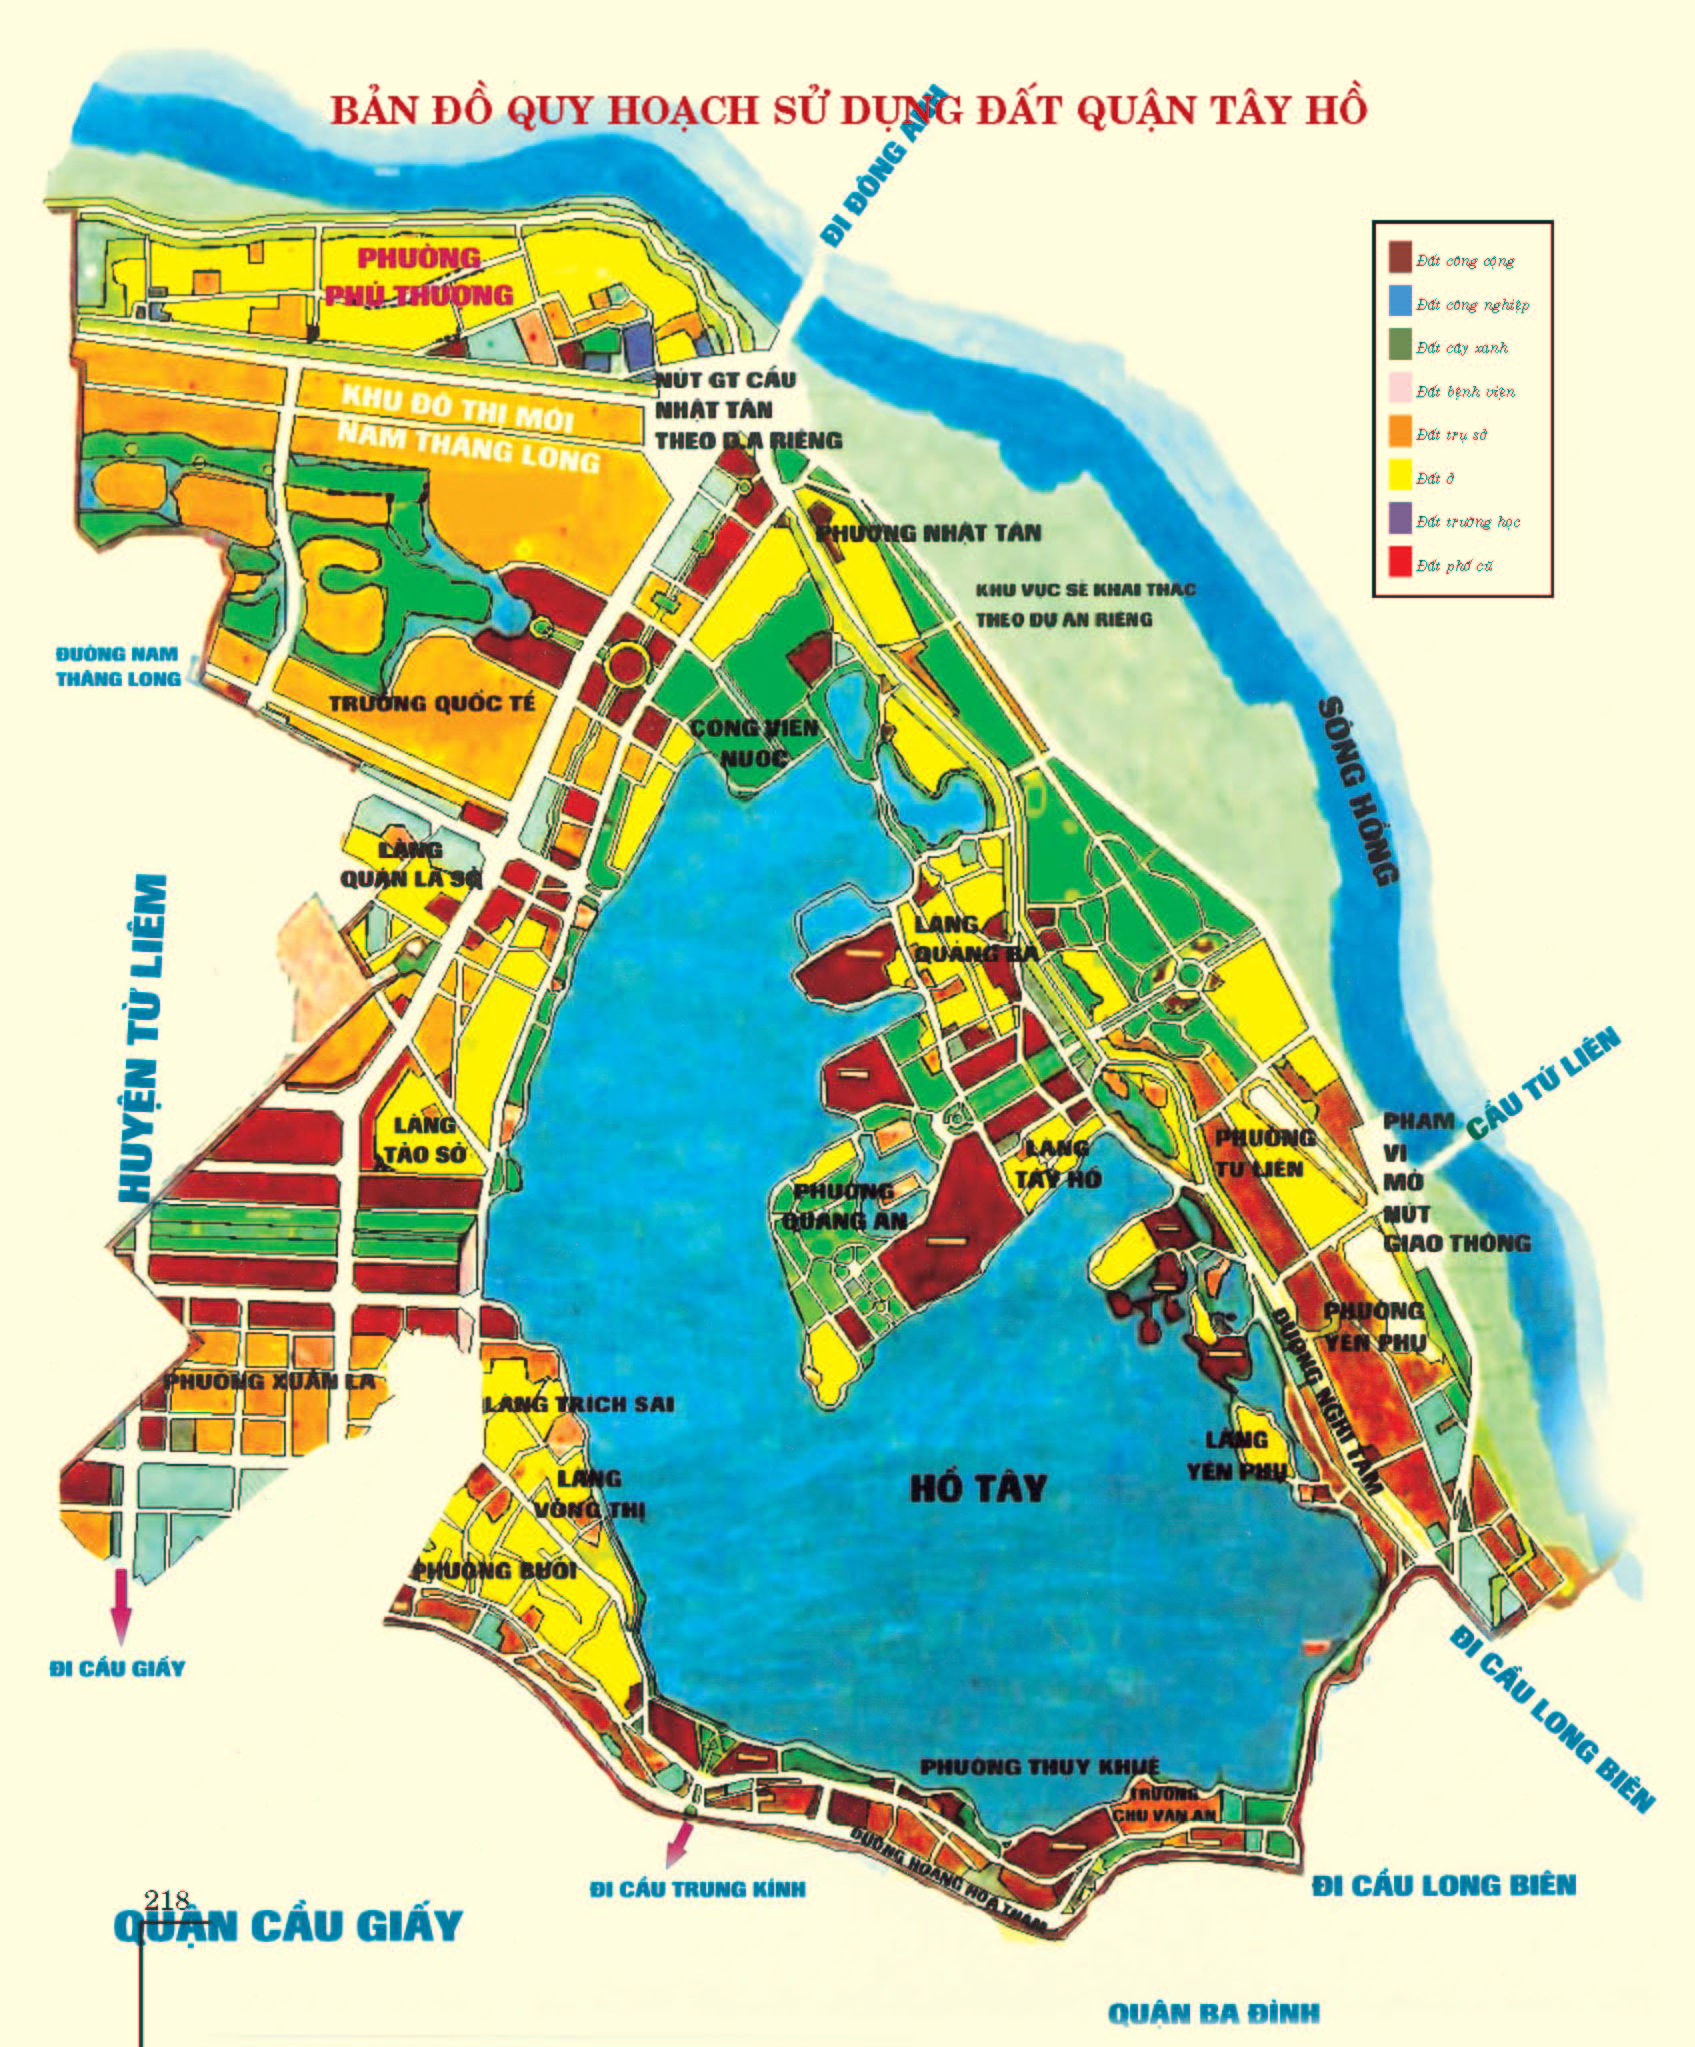 Bản đồ quy hoạch sử dụng đất Quận Tây Hồ